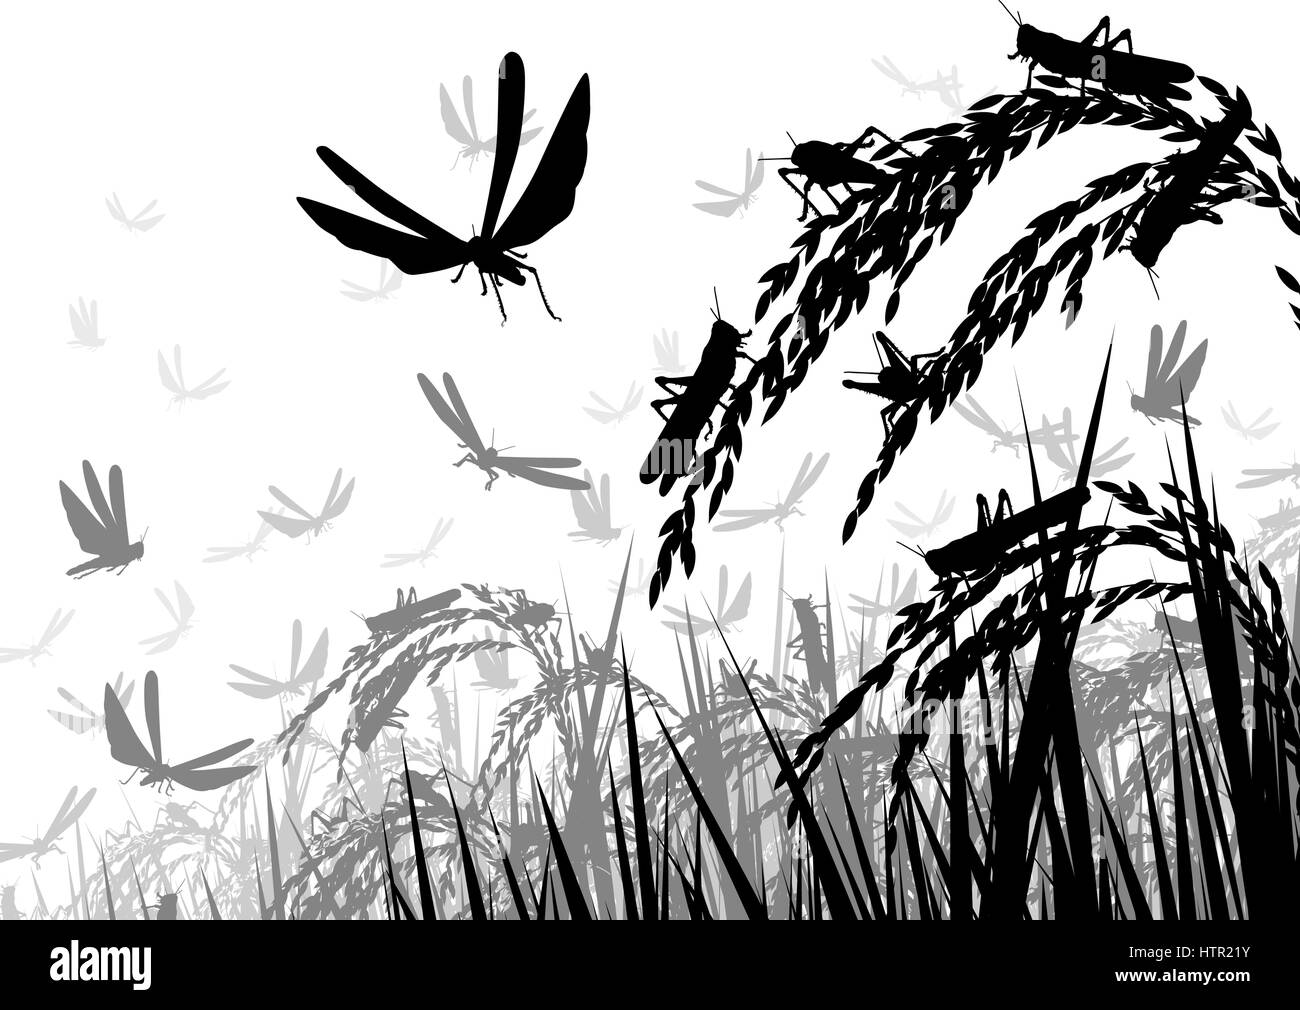 Vektor-Illustration der Silhouette eines Schwarms von Heuschrecken Reispflanzen angegriffen und bedroht die Ernährungssicherheit Stock Vektor